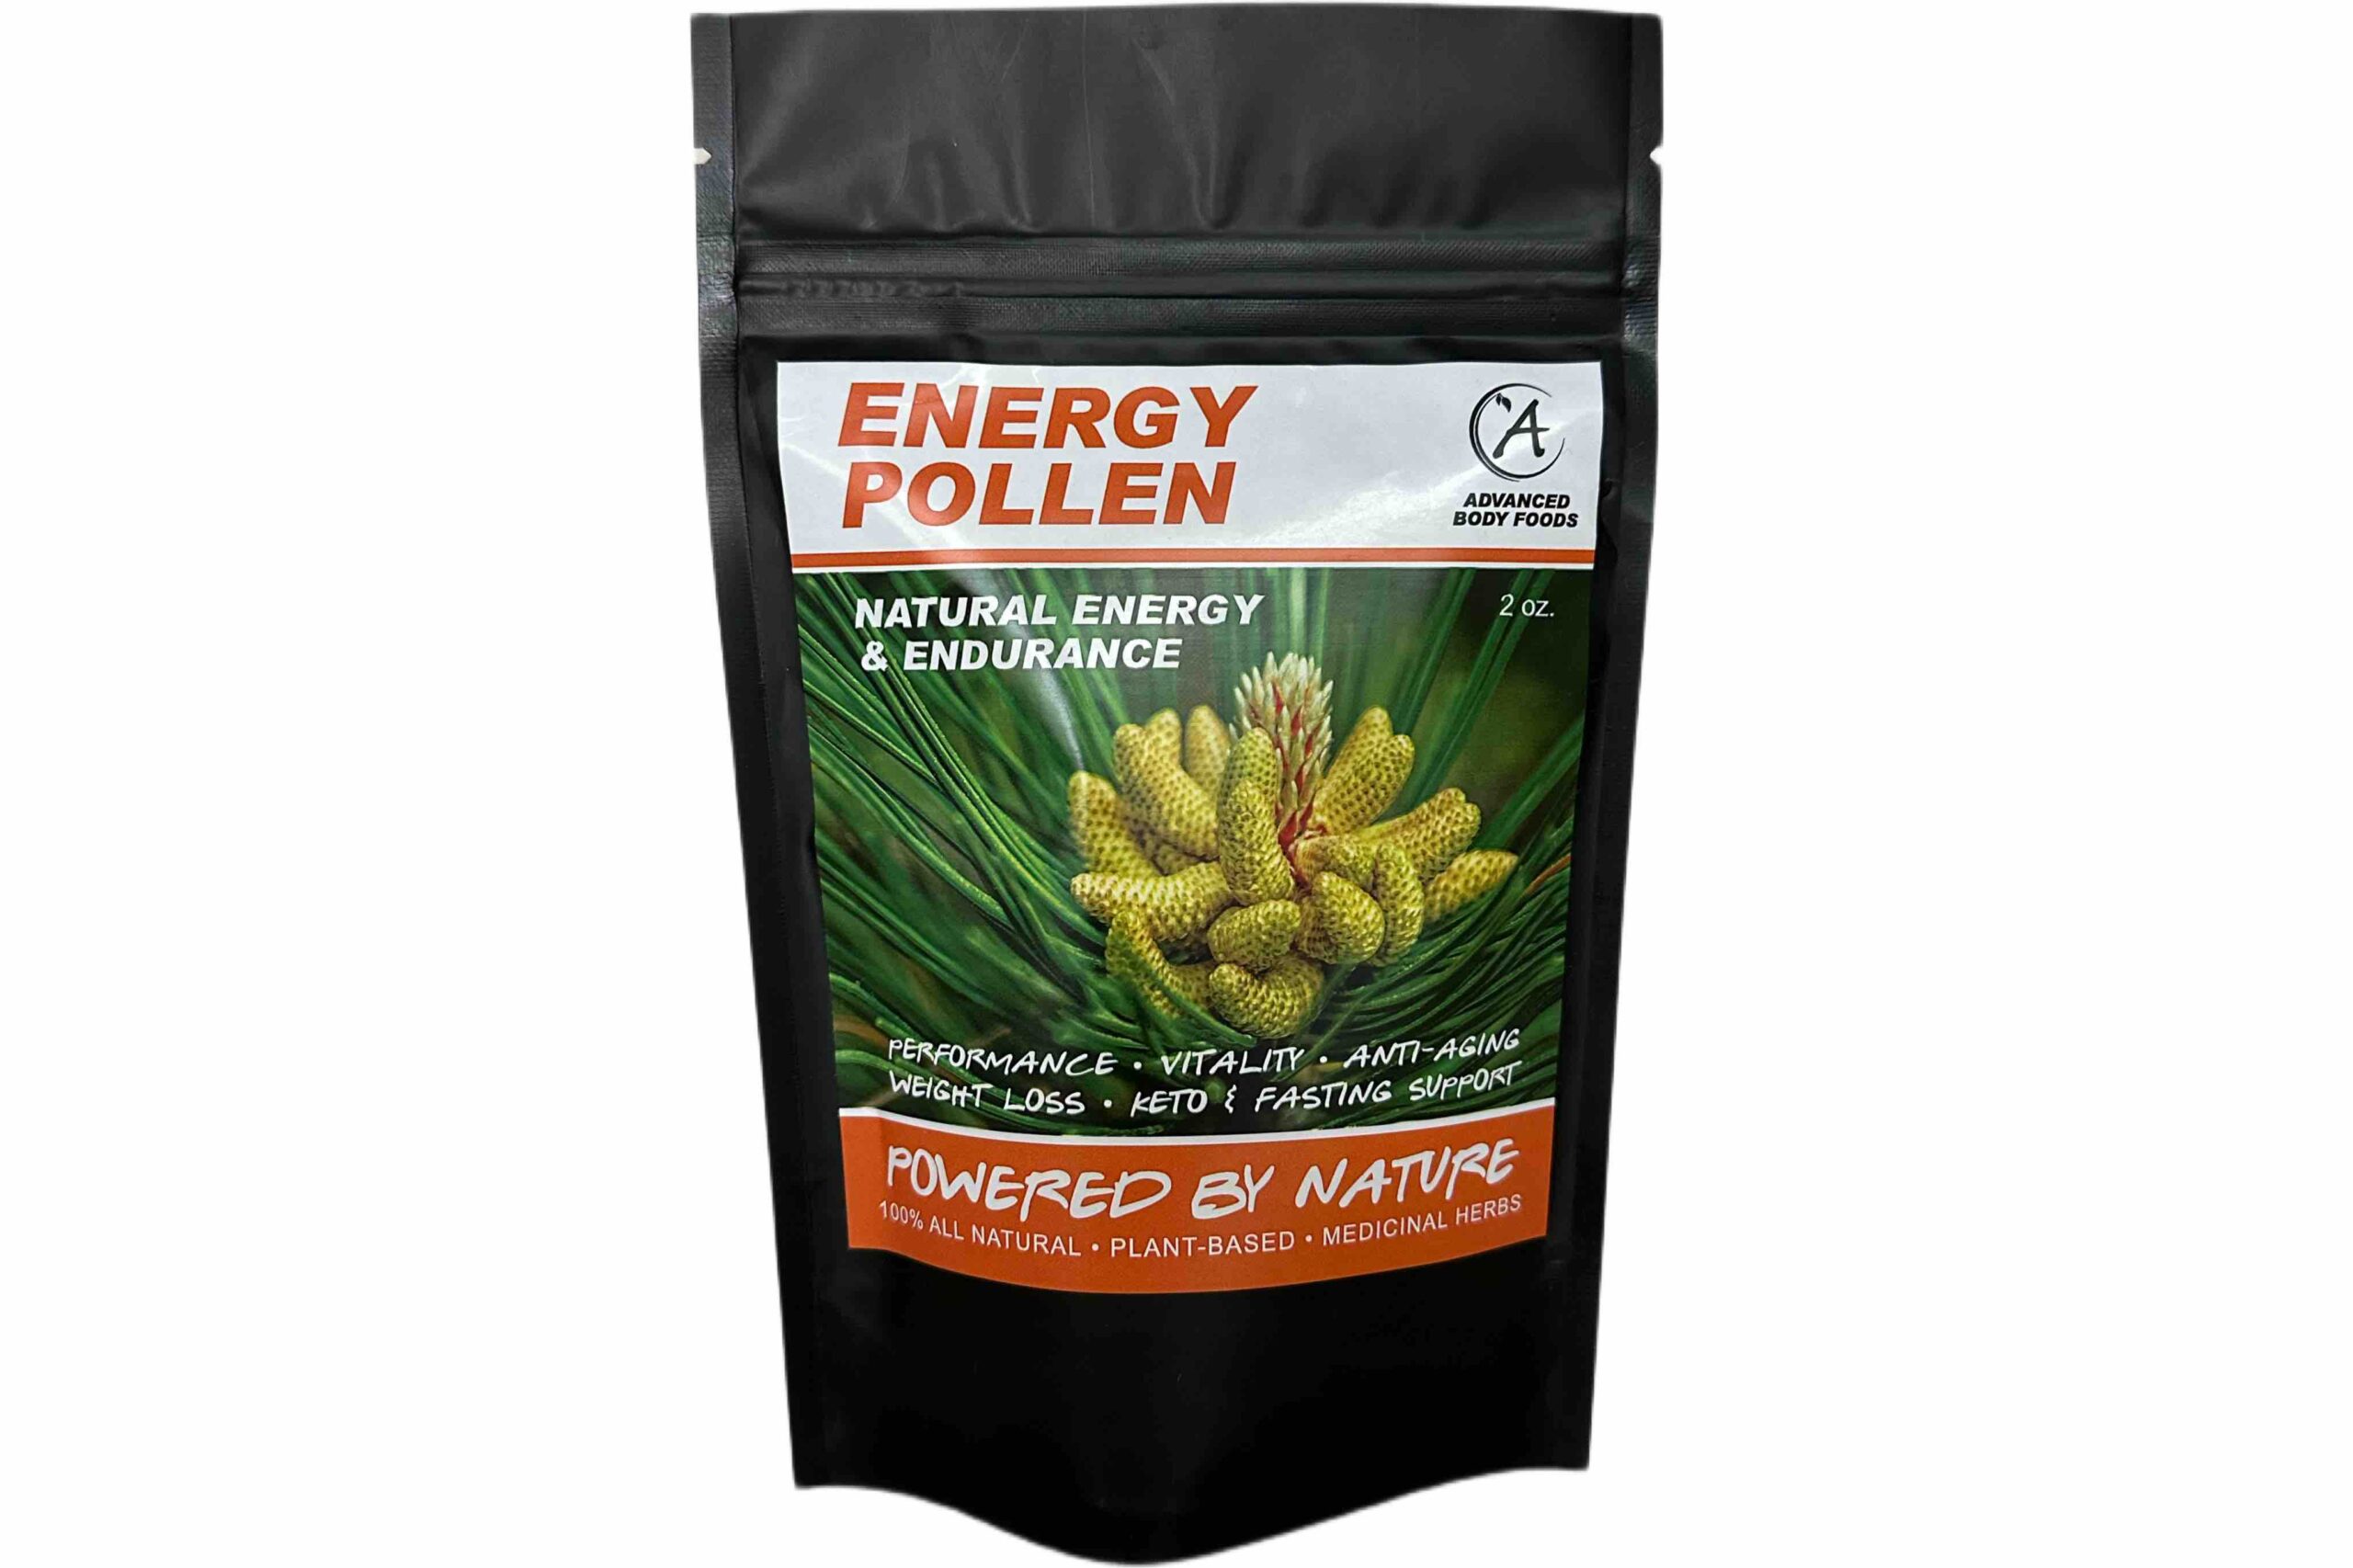 #1 Best Supplement For Energy | Energy Pollen